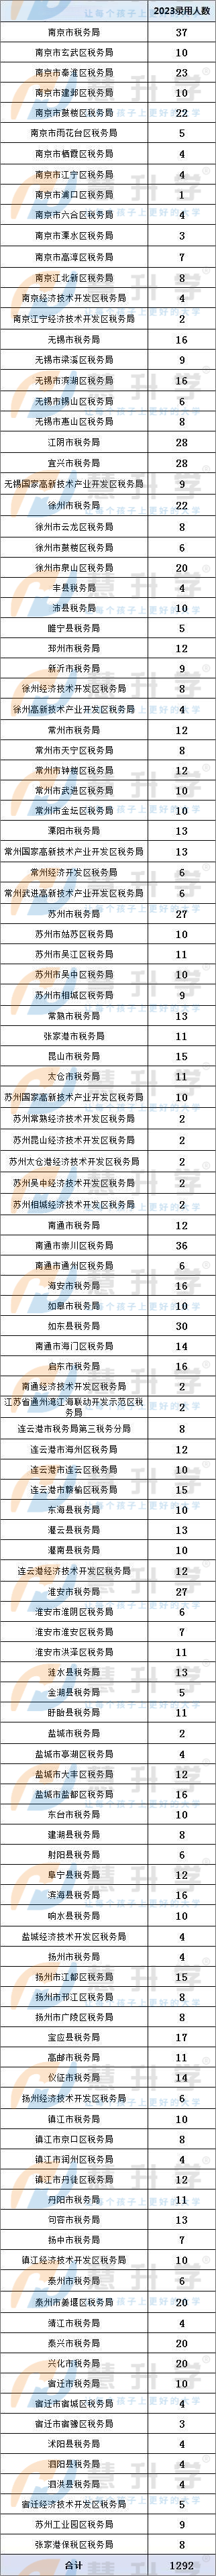 江苏省税务局拟录用公务员261万人，实际参考225万人